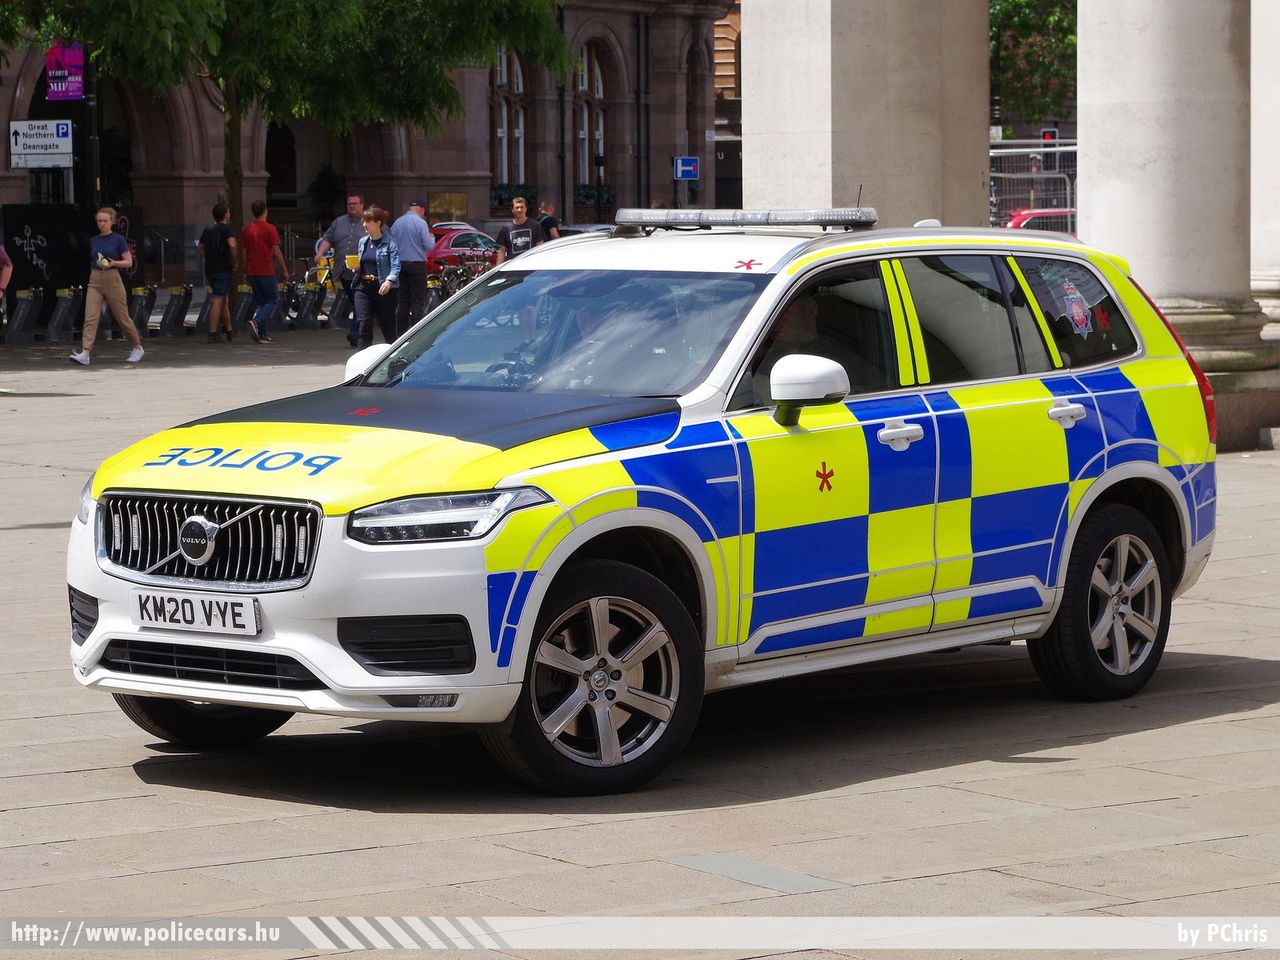 Volvo XC90, fotó: PChris
Keywords: angol Anglia rendőr rendőrautó rendőrség english England police policecar